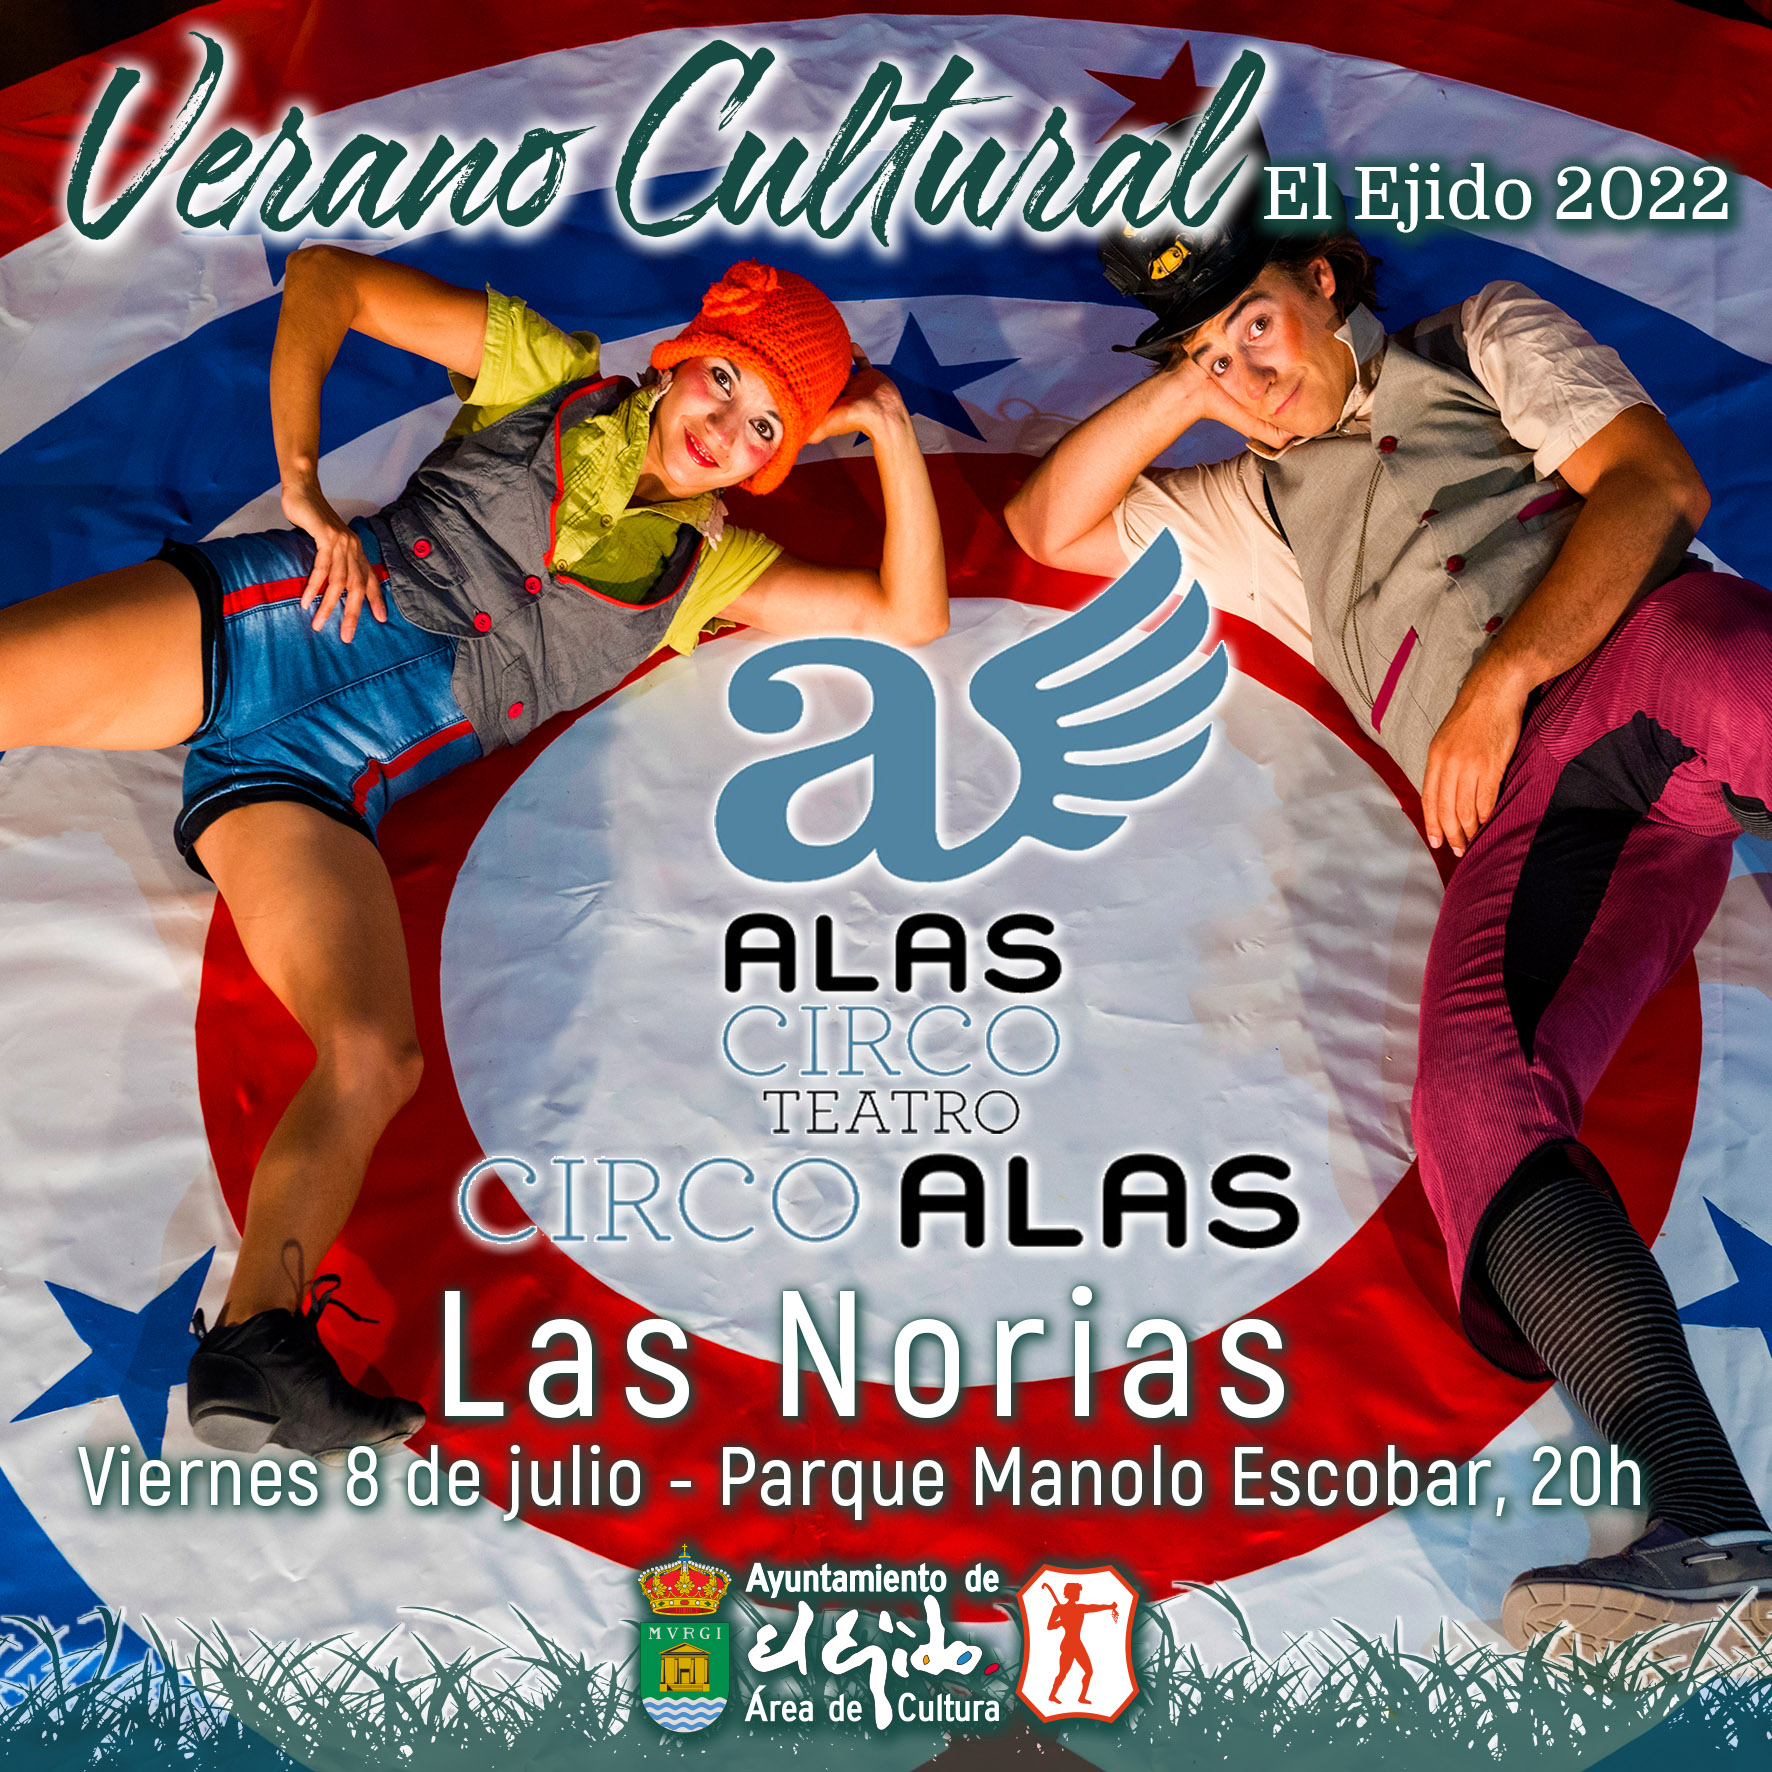 Verano Cultural 2022 de El Ejido – Teatro en Las Norias – Alas Circo Teatro «Circo Alas»